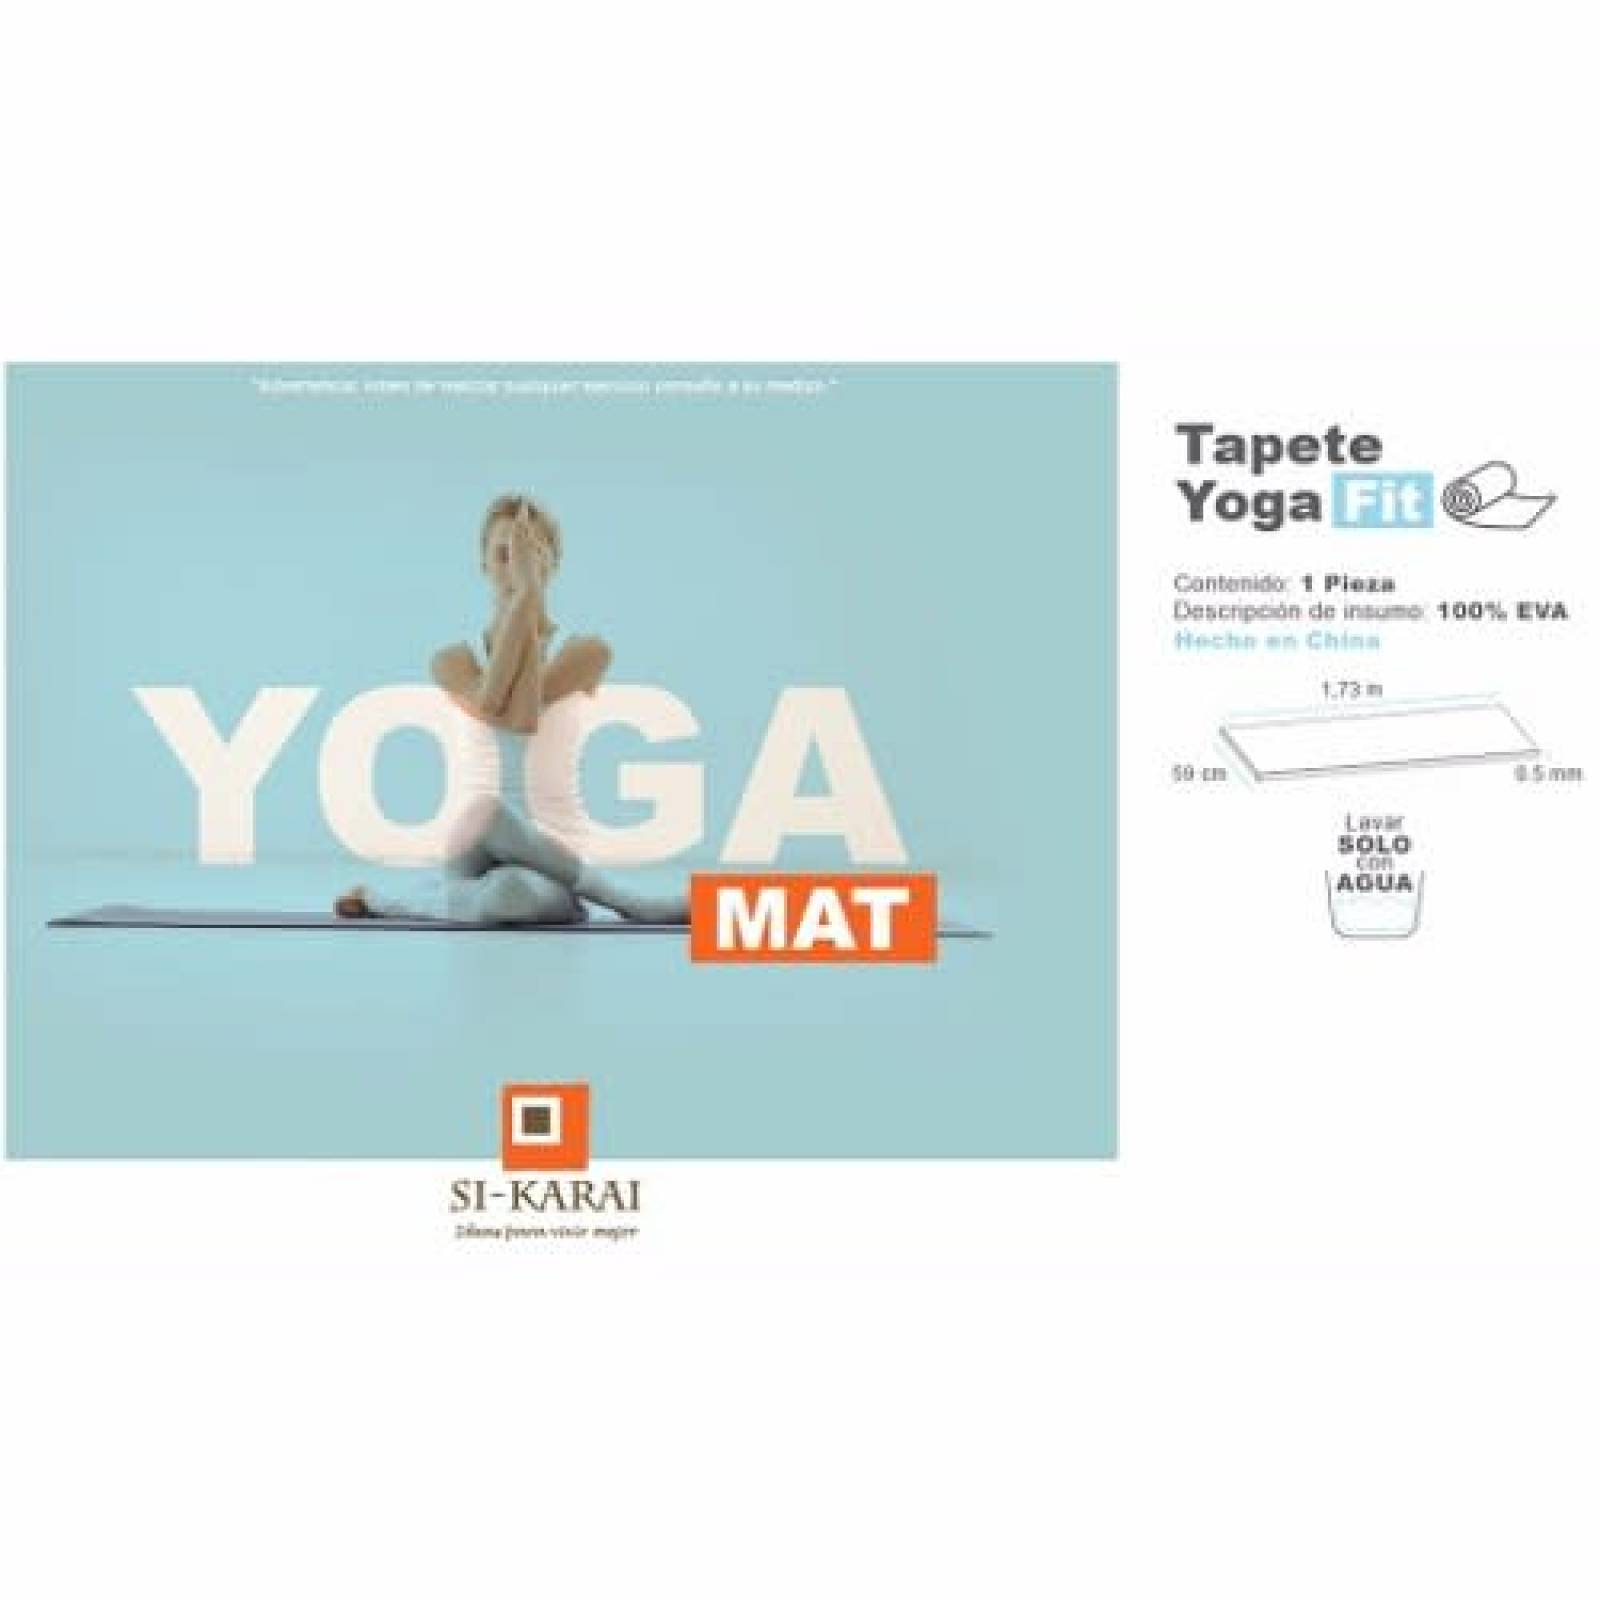 Tapete Si-karai Yoga Pilates Fit Rosa